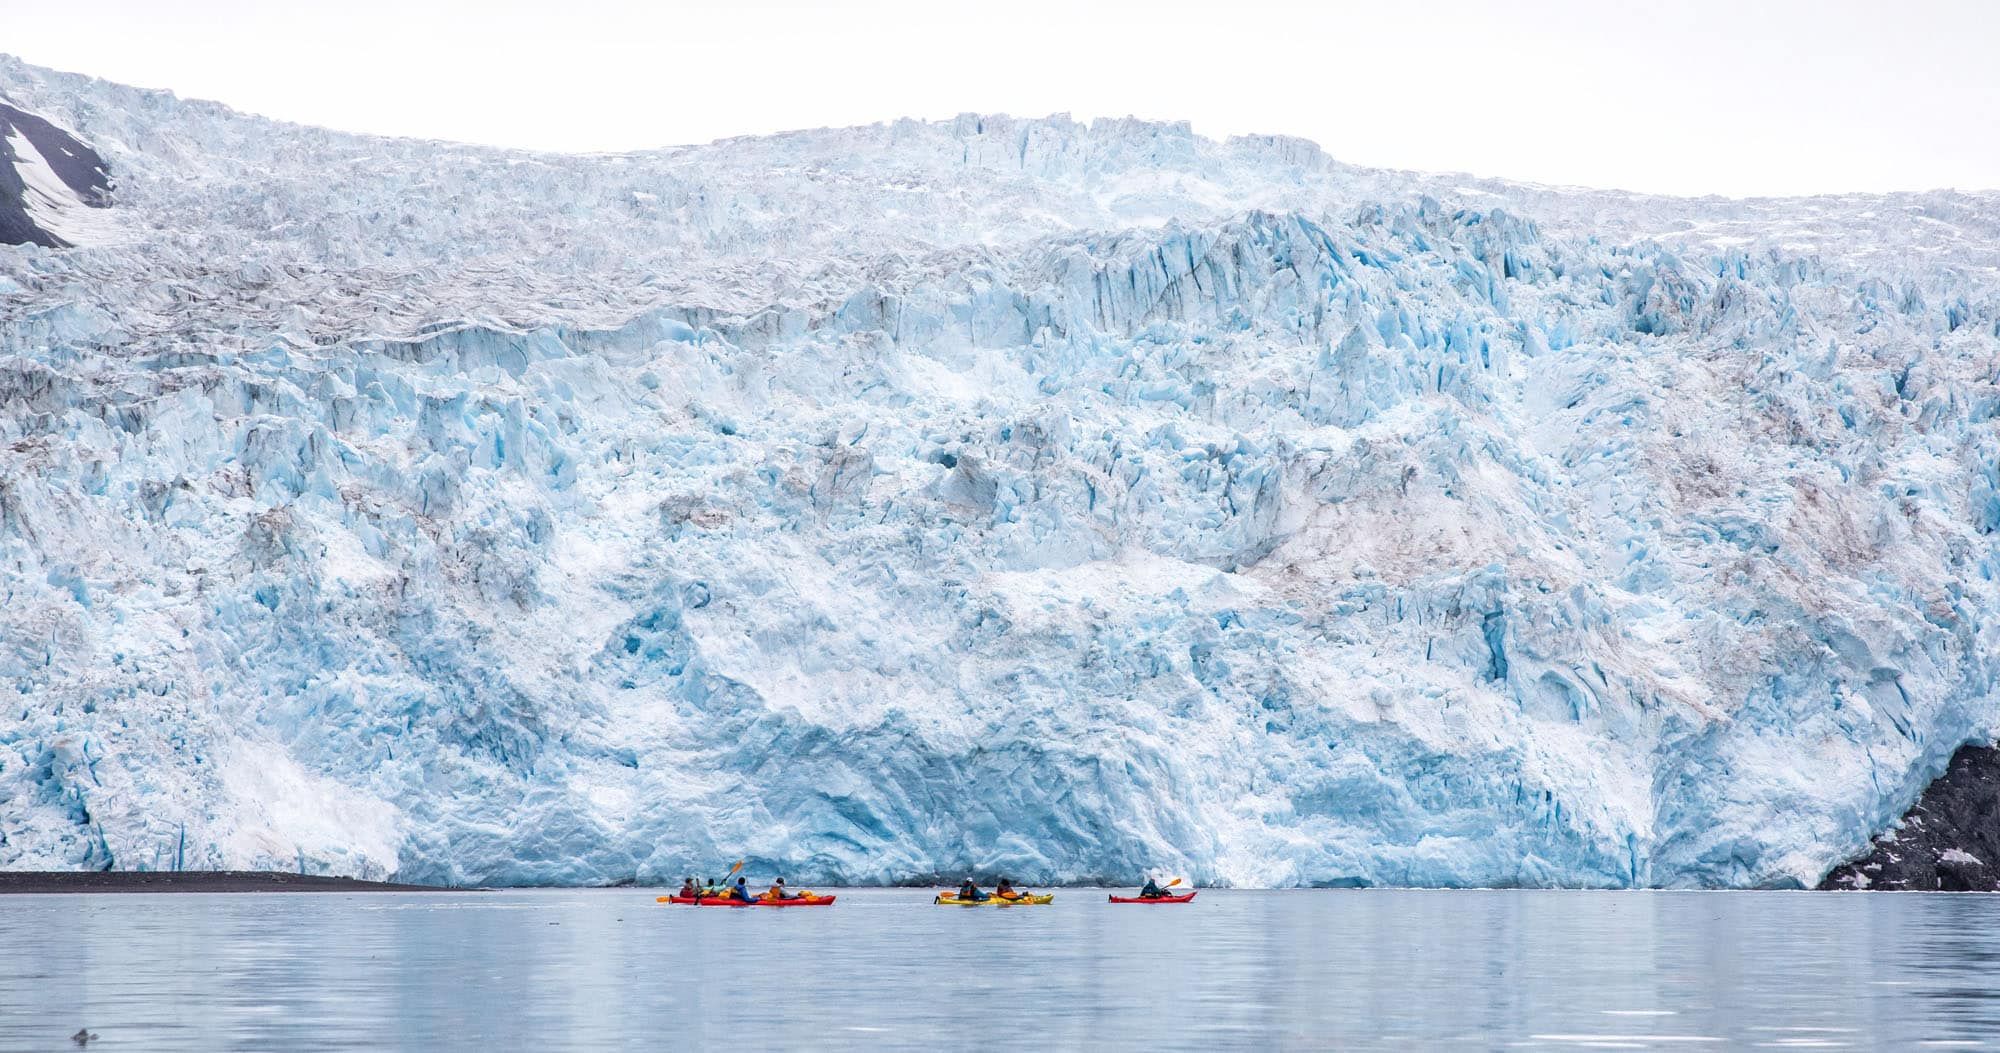 Aialik Glacier Kayaking